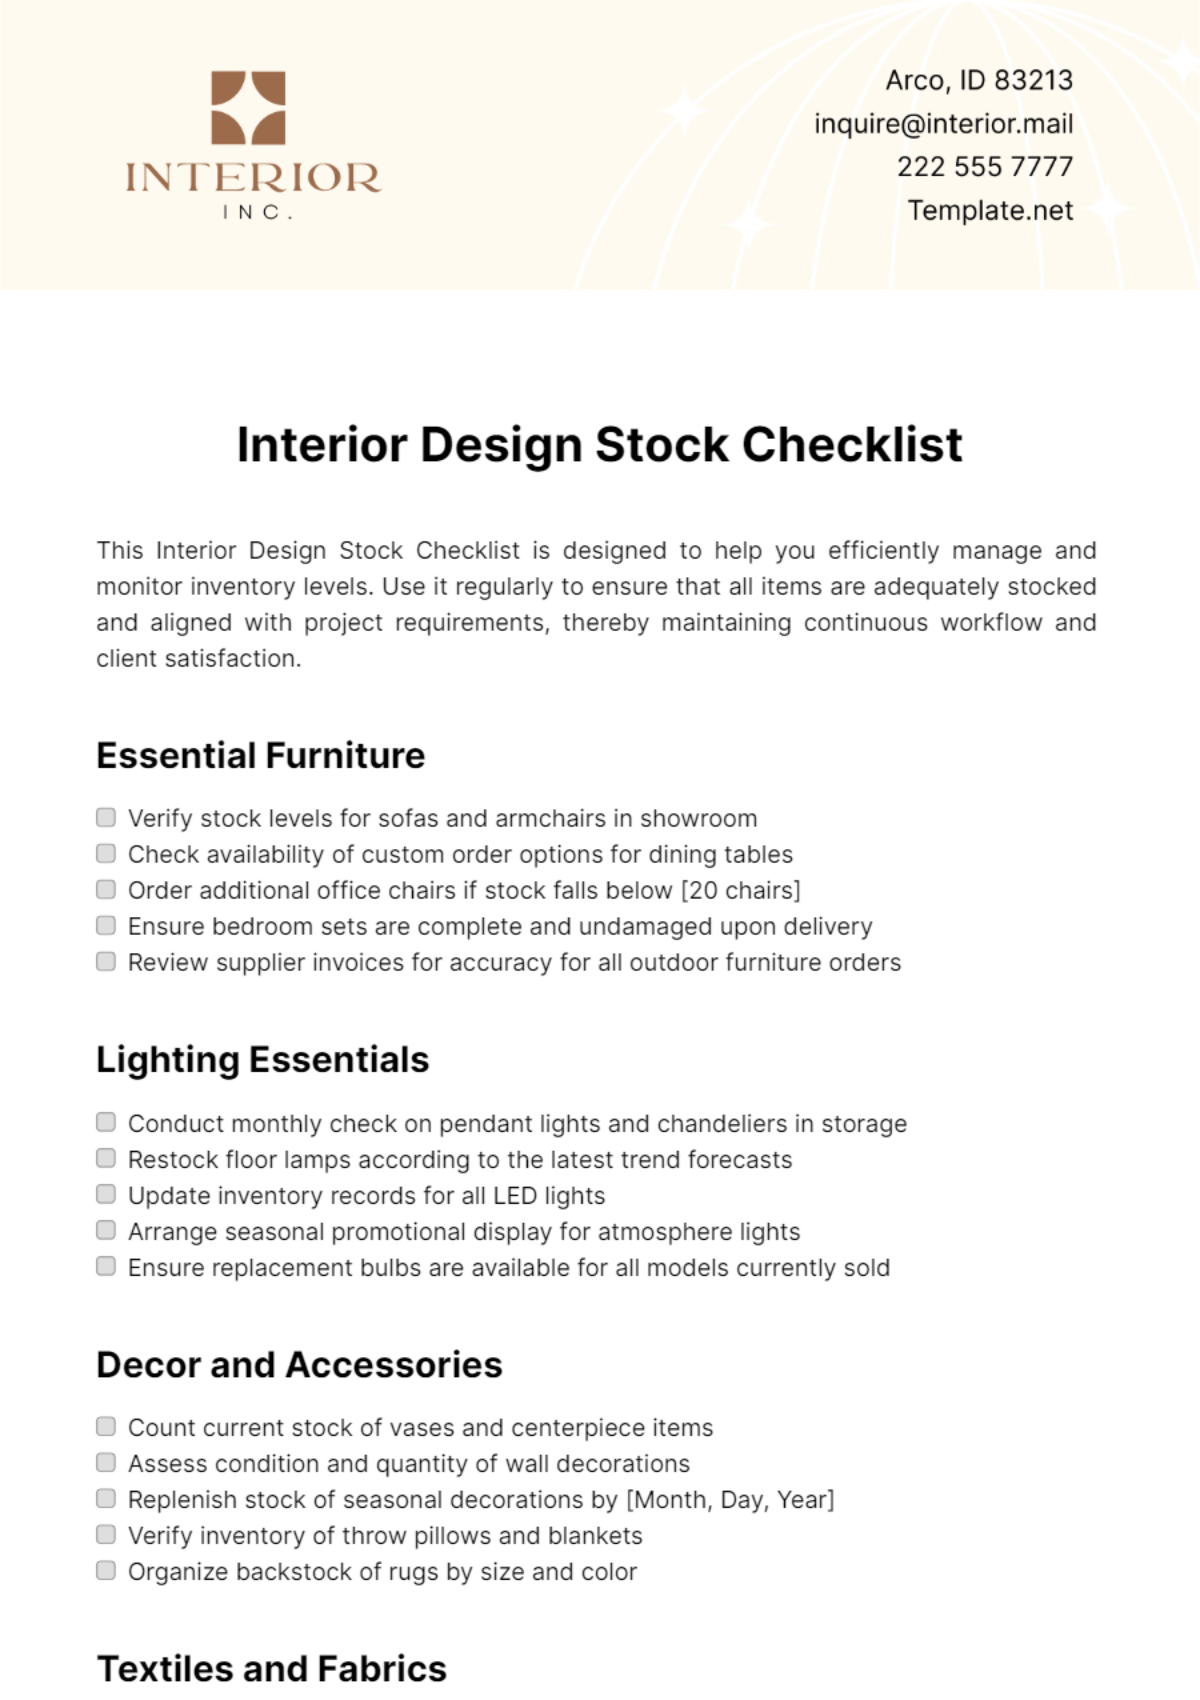 Free Interior Design Stock Checklist Template